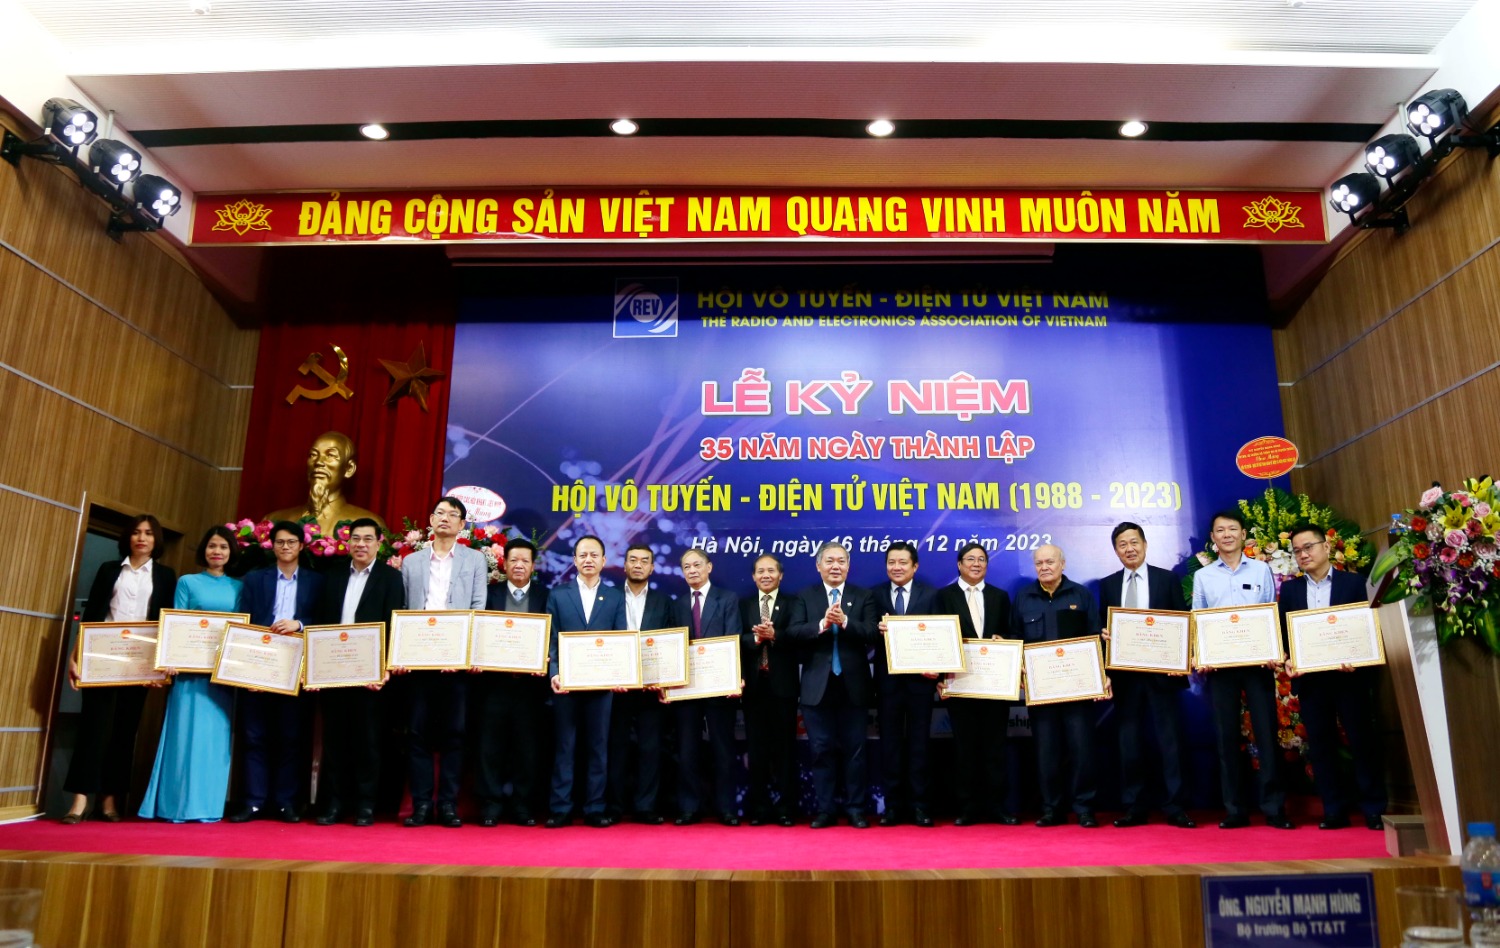 Hội Vô tuyến - Điện tử Việt Nam, REV, REV-ECIT, ATC, dien tu va ung dung, le kỷ niem 35 nam thành lap REV